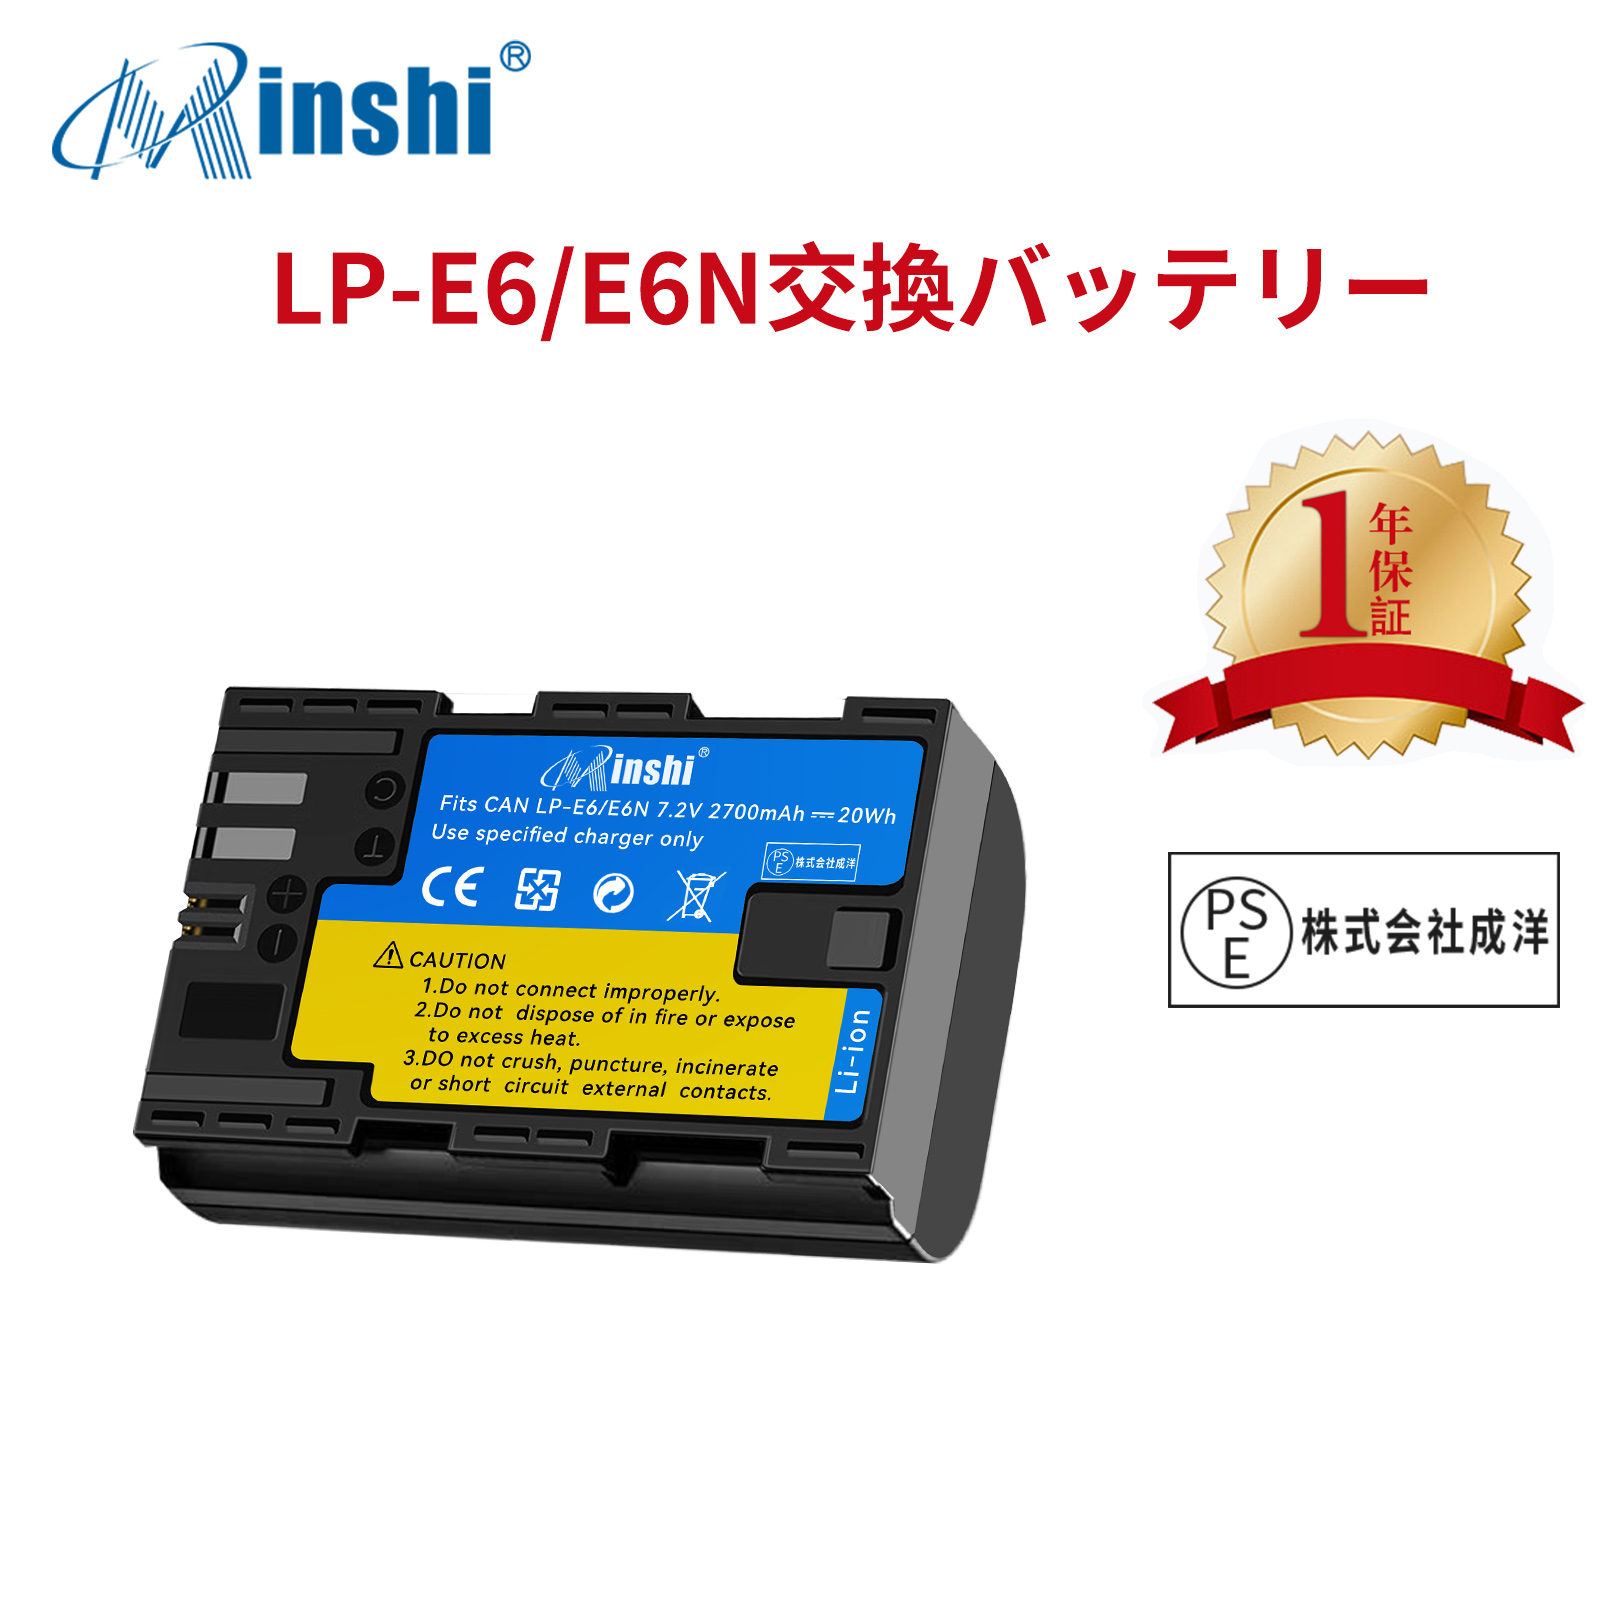 【1年保証】minshi Canon EOS 5D MarkIII  LP-E6NH LP-E6N EOS6D CANON 80D 【2700mAh 7.2V】高品質LP-E6NH交換用バッテリー